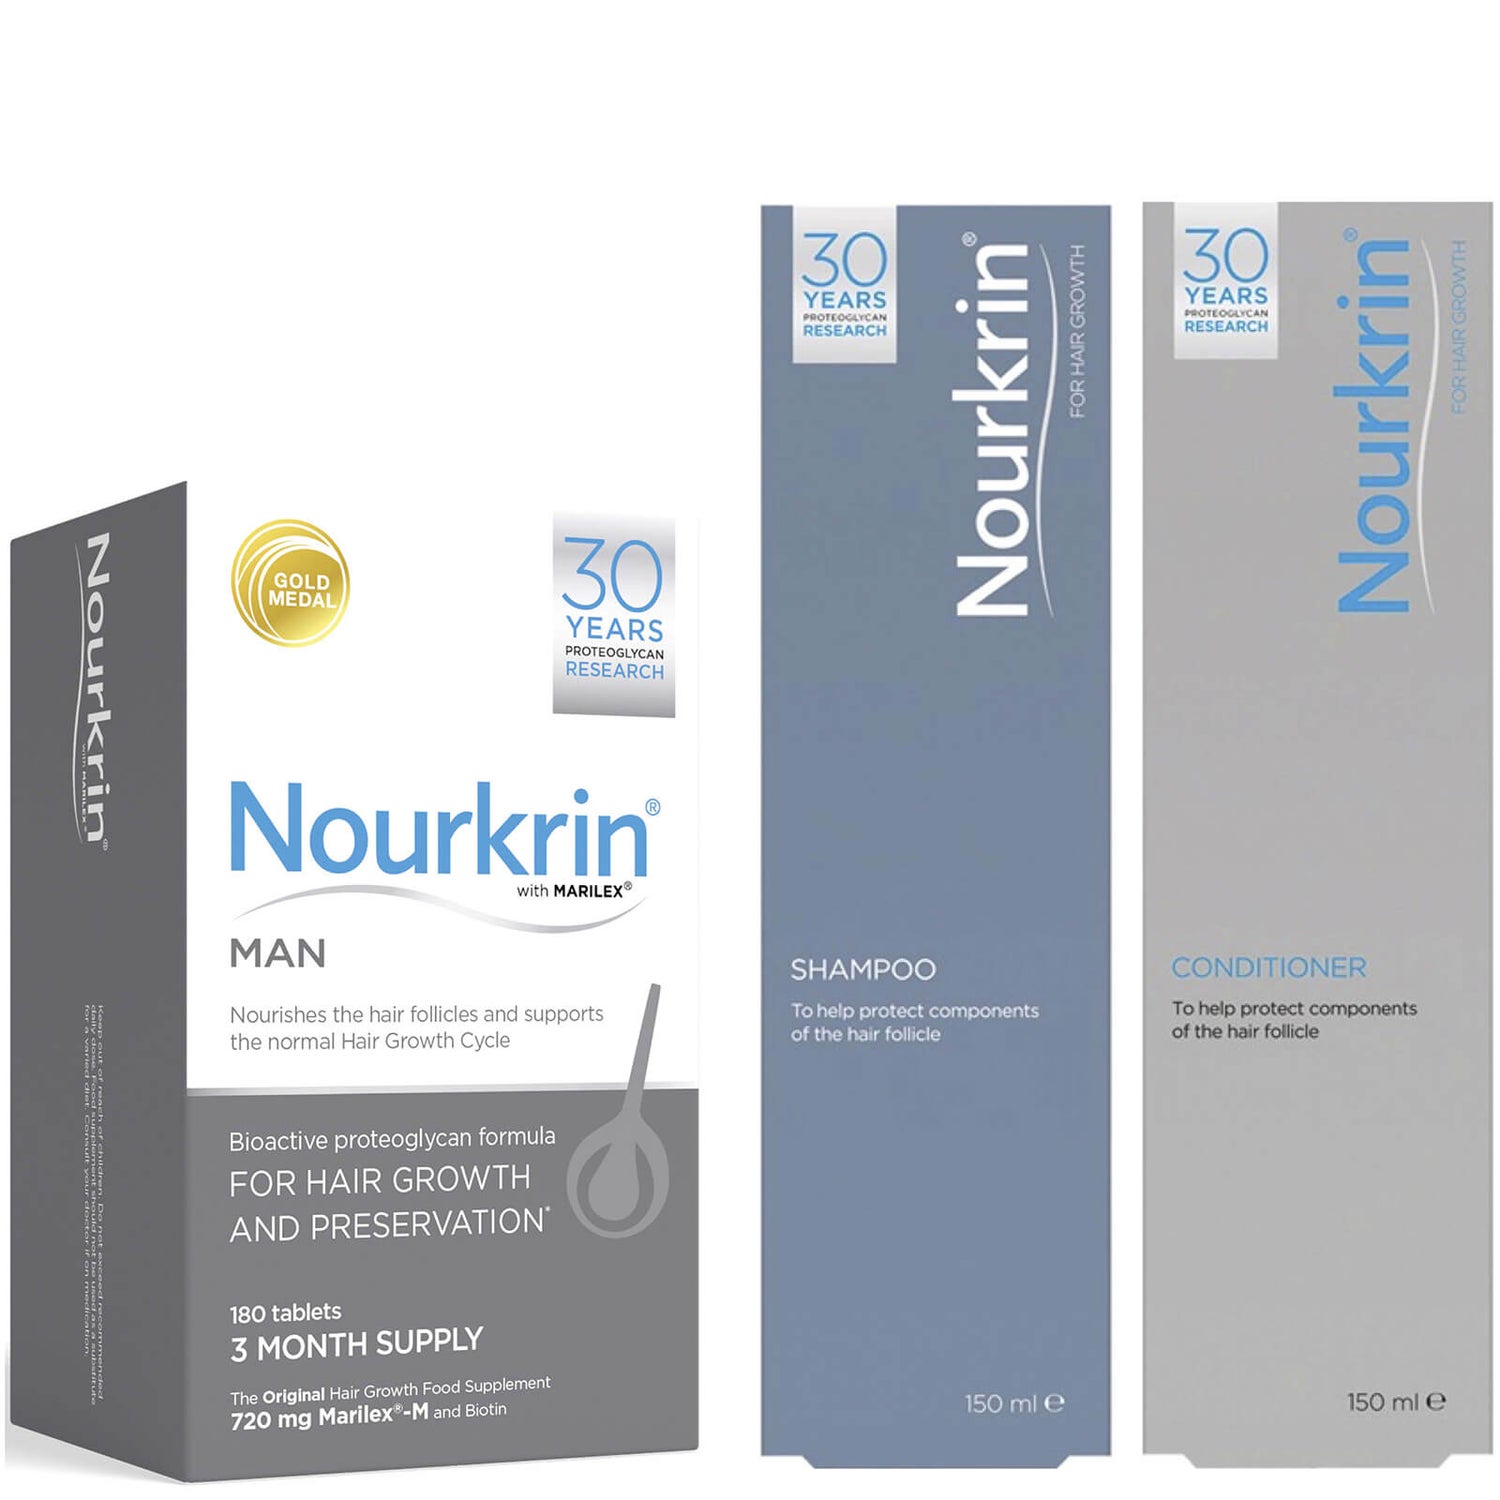 Nourkrin Man Haarwachstum Set für Männer - Enthält 180 Tabletten Plus gratis Shampoo und Conditioner (2x150ml)